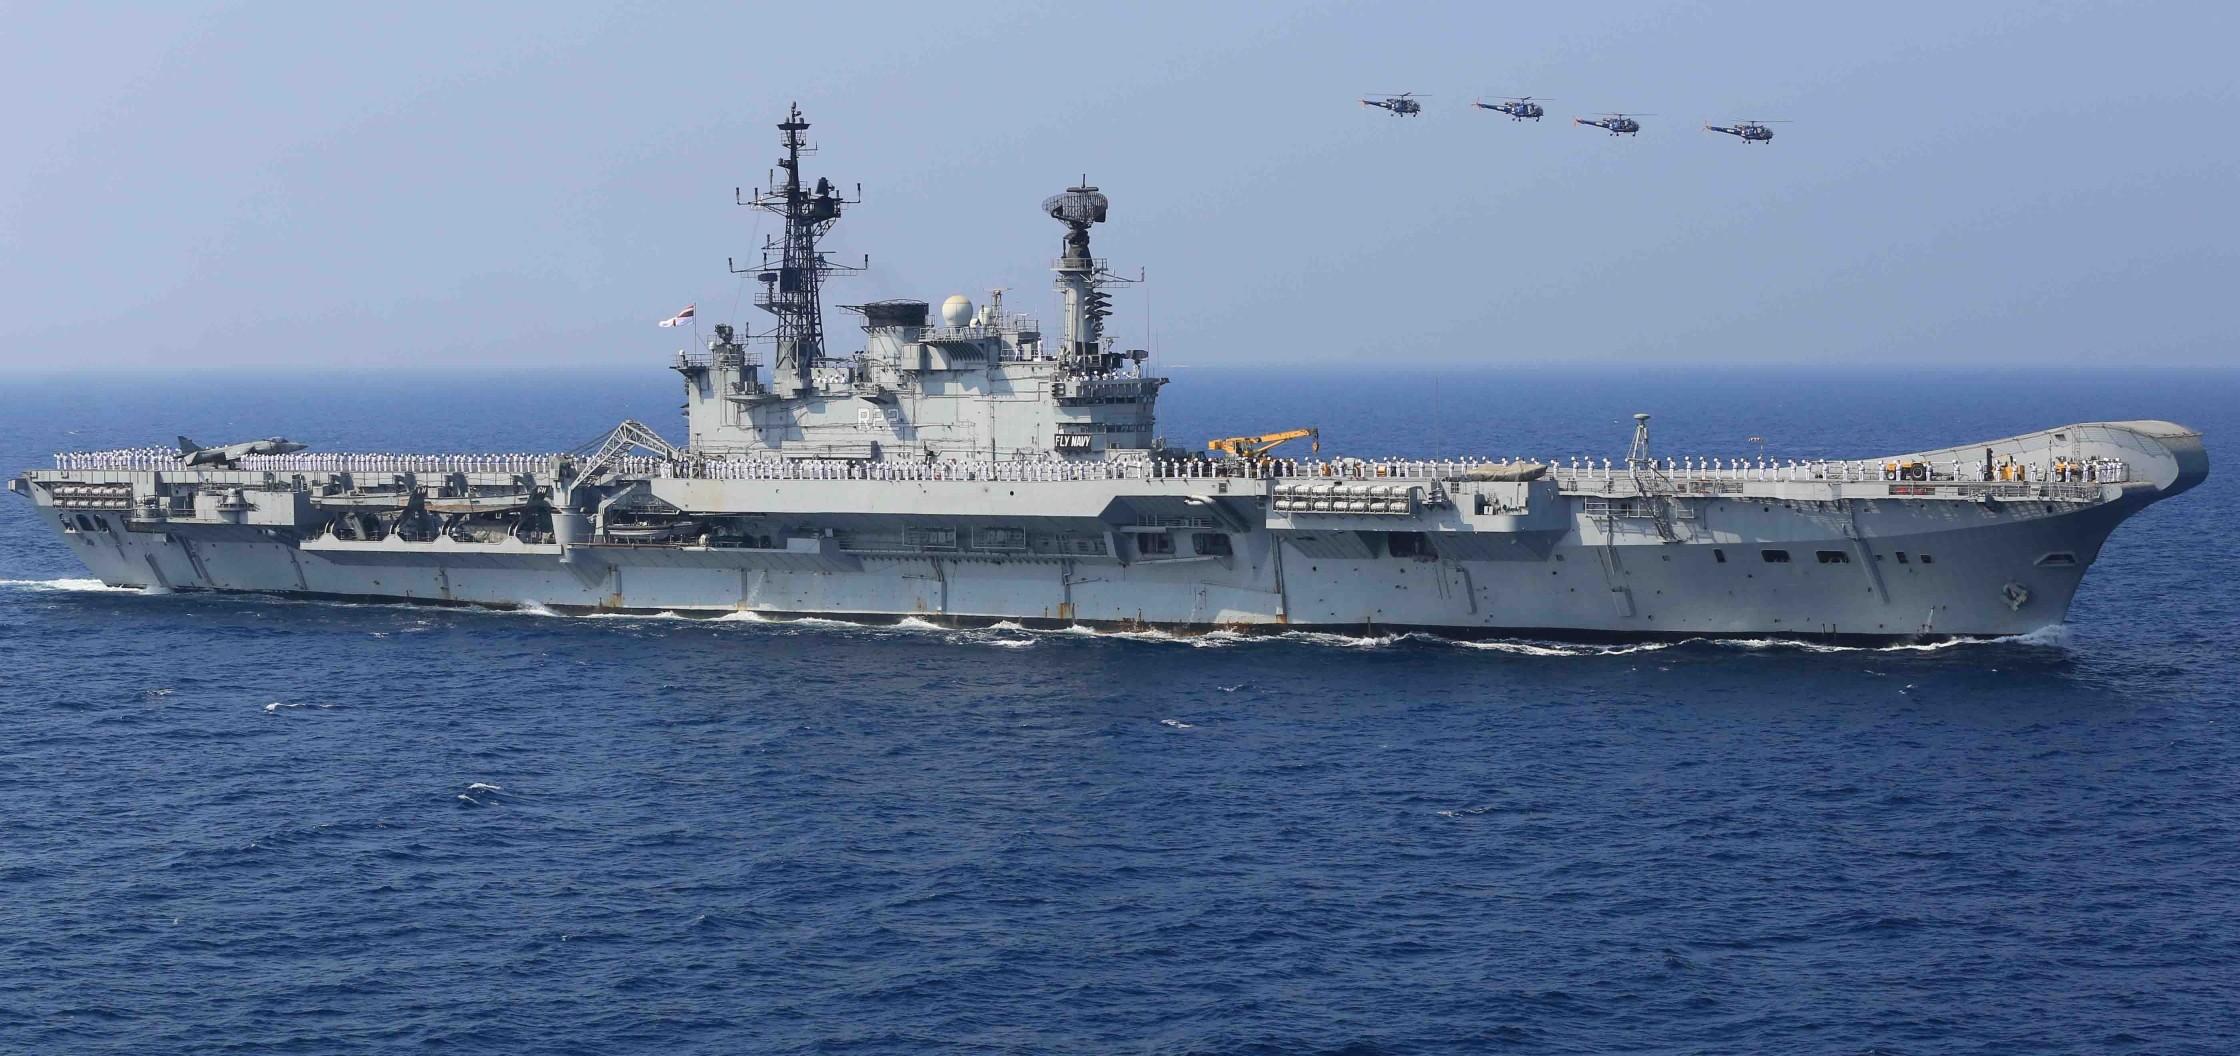 ins vikramaditya aircraft carrier warship Wallpaper HD